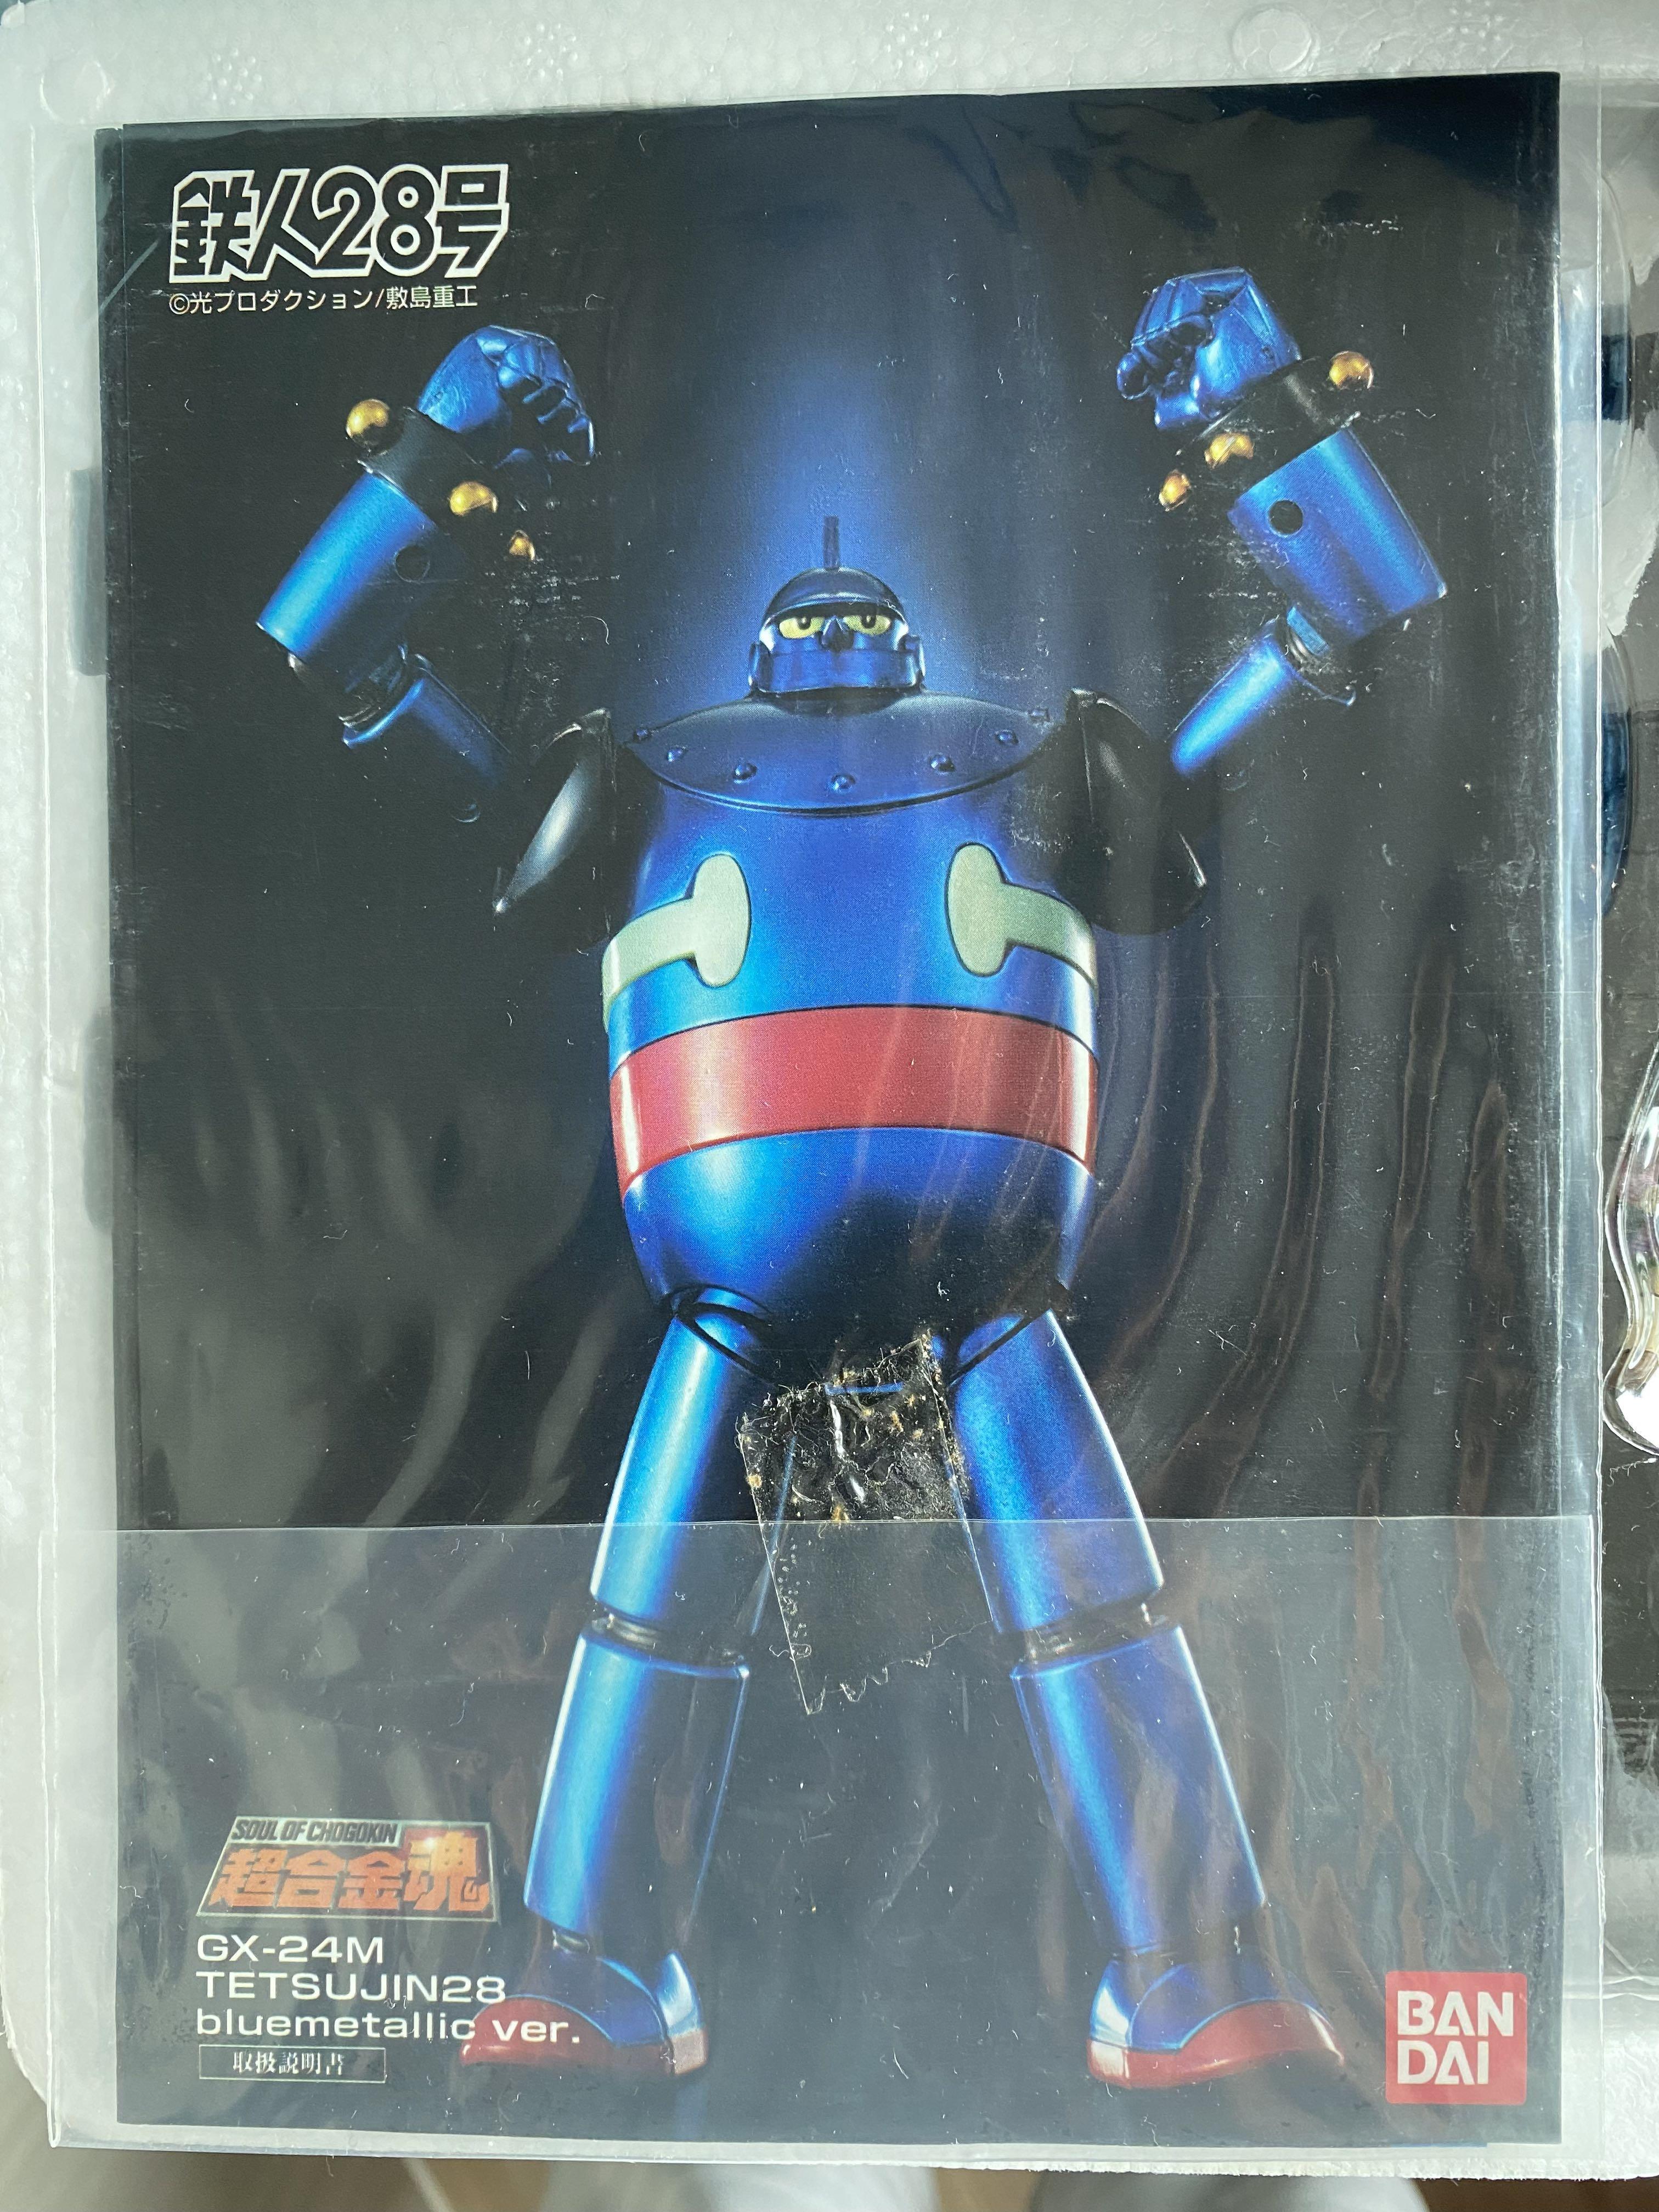 BANDAI 萬代Soul of Chogokin GX-24M Gigantor (Blue Metallic Version 